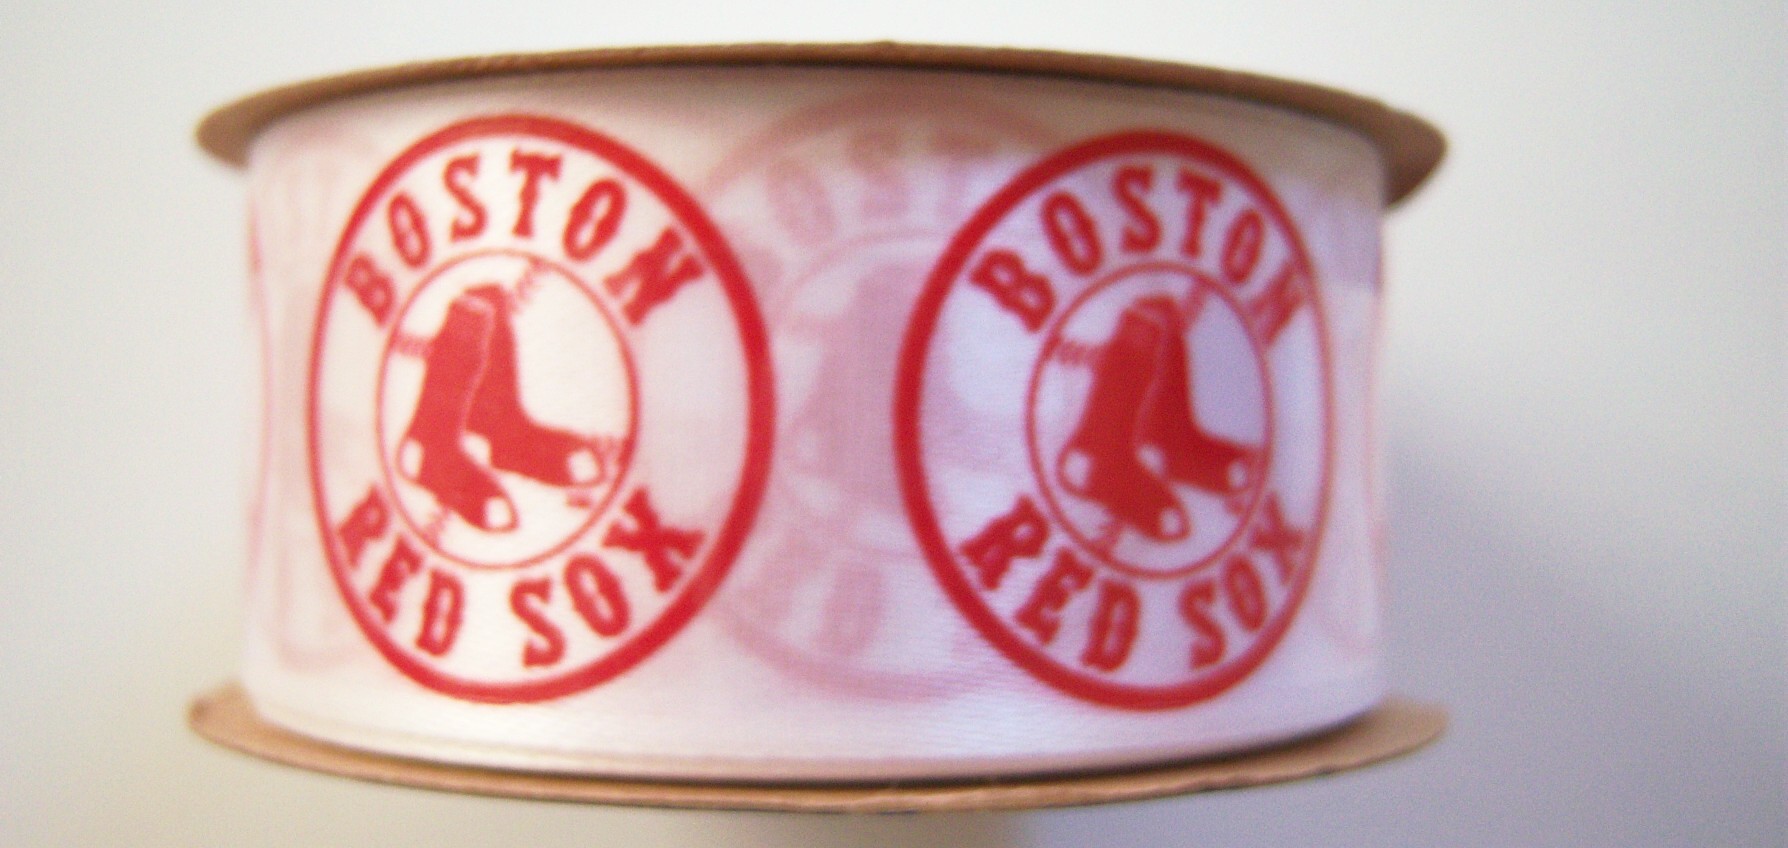 Boston Red Sox 1 5/16" Satin Ribbon